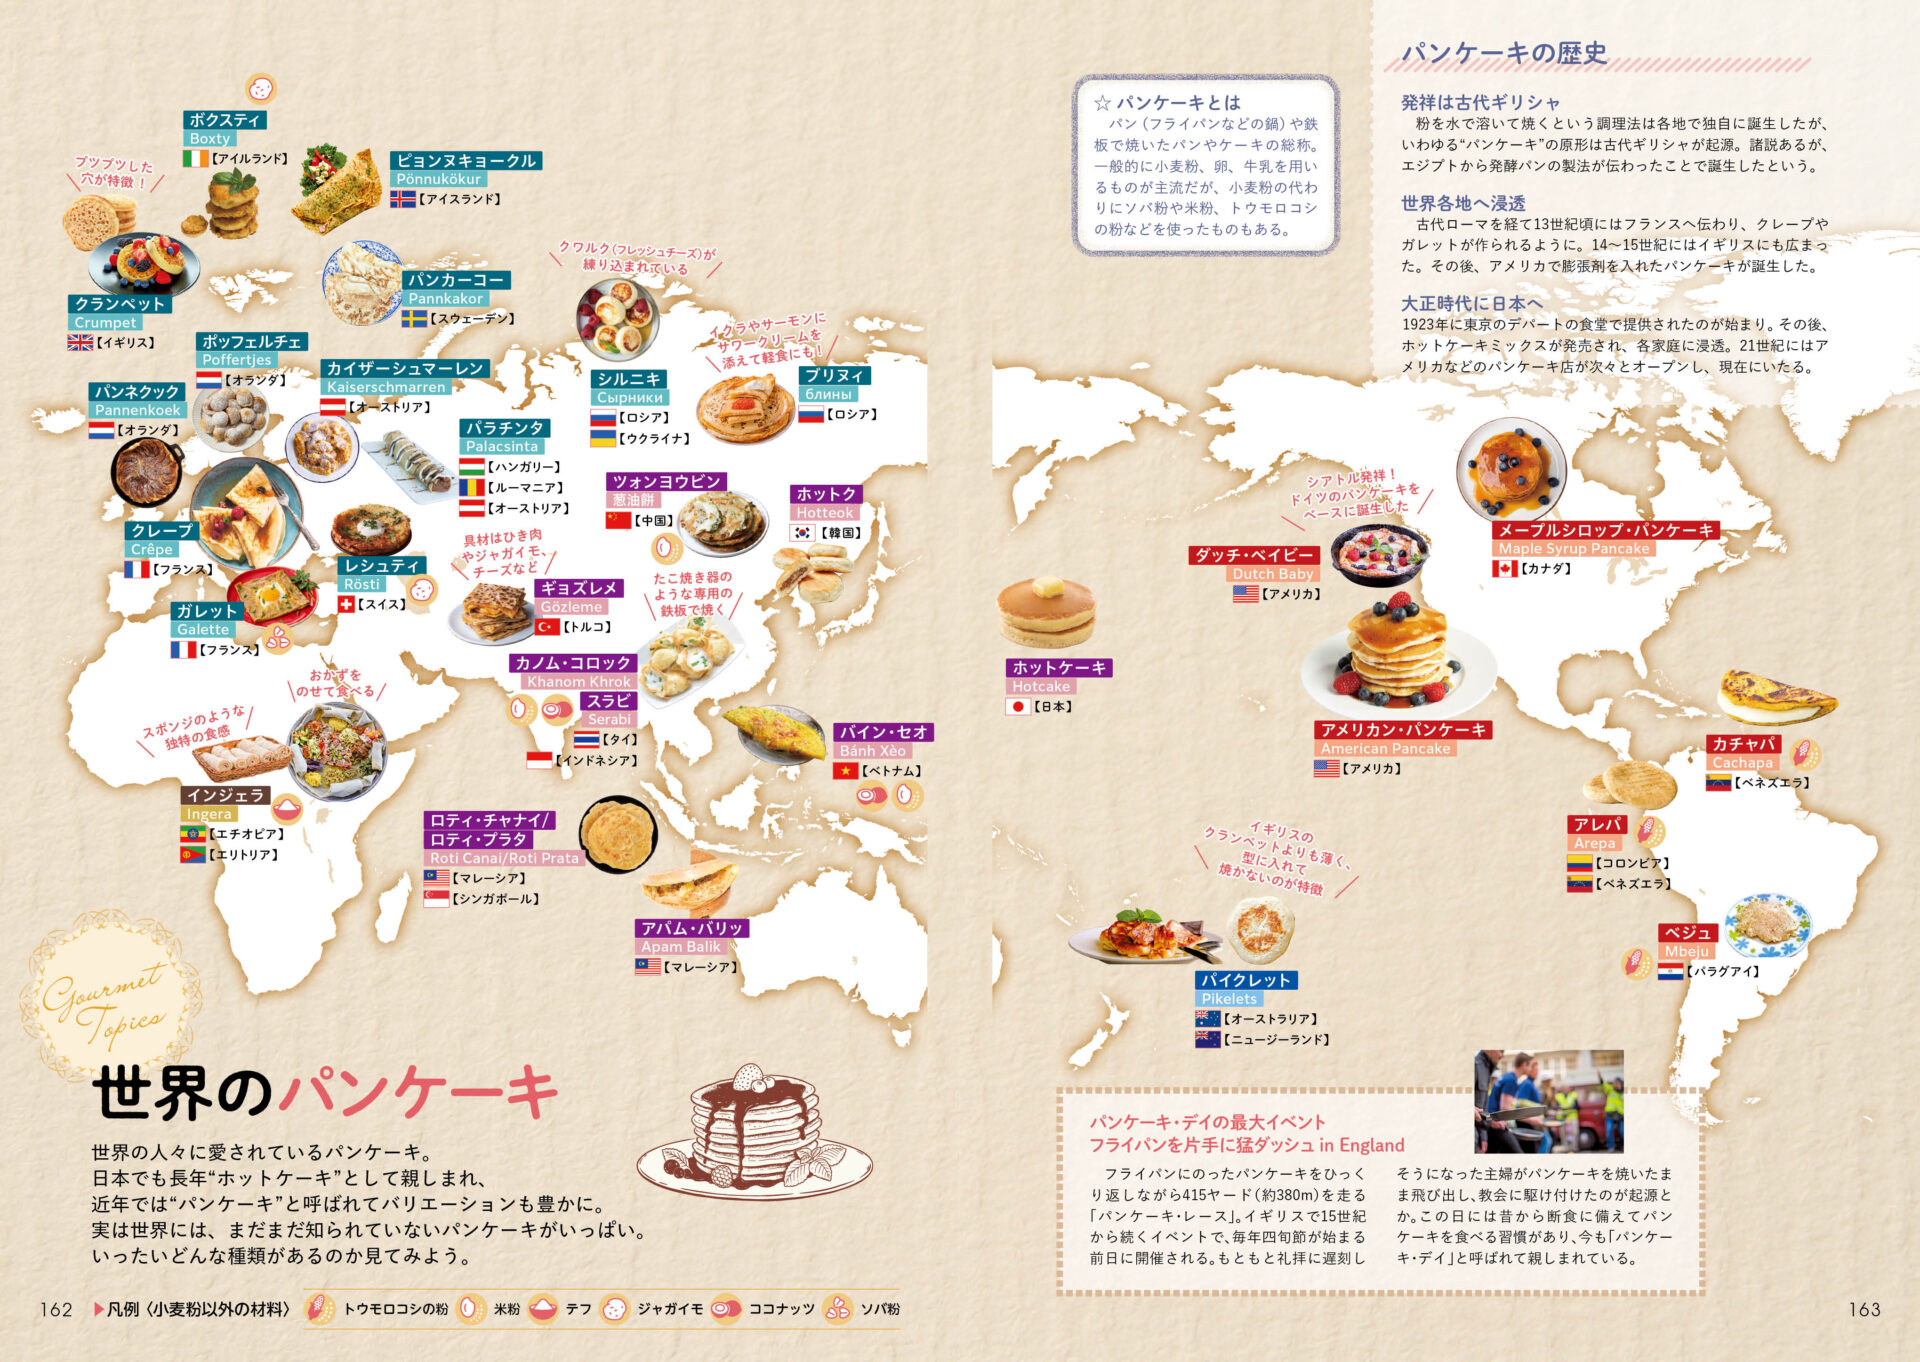 世界のパンケーキマップのページ画像。世界地図とともに、各国のご当地パンケーキが写真とテキストで紹介されています